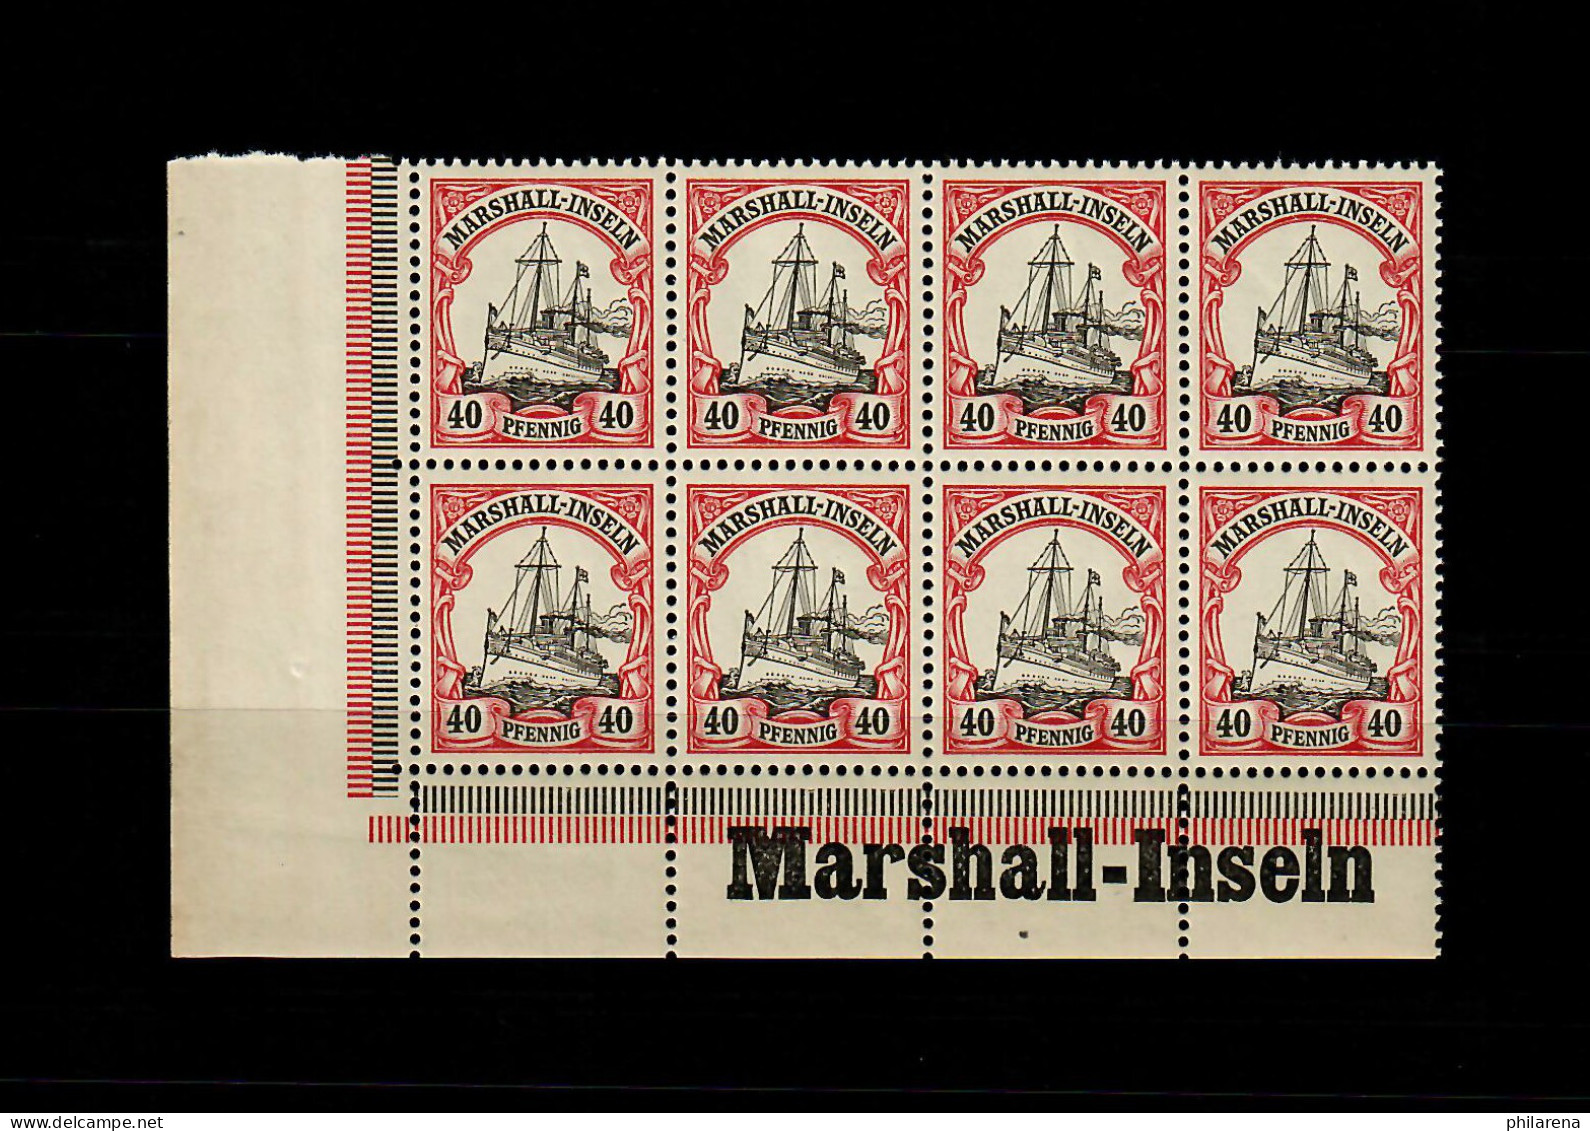 Marschall-Inseln: MiNr. 19, 8er Block Links Inschrift Eckrand, Postfrisch ** - Marshall Islands